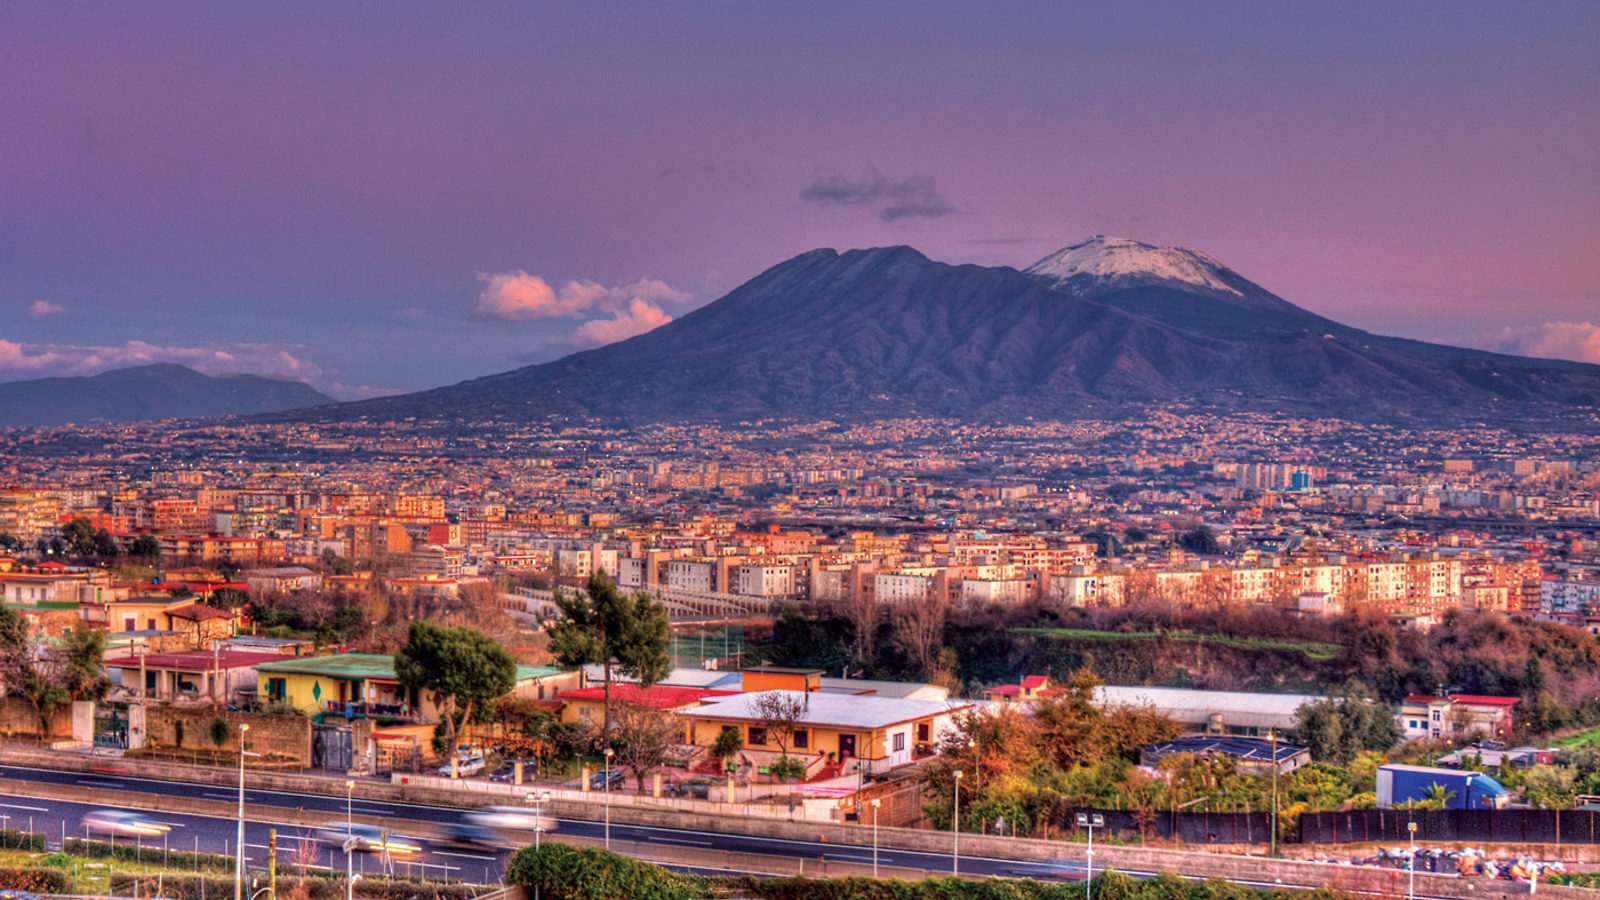 Image of Mount Vesuvius